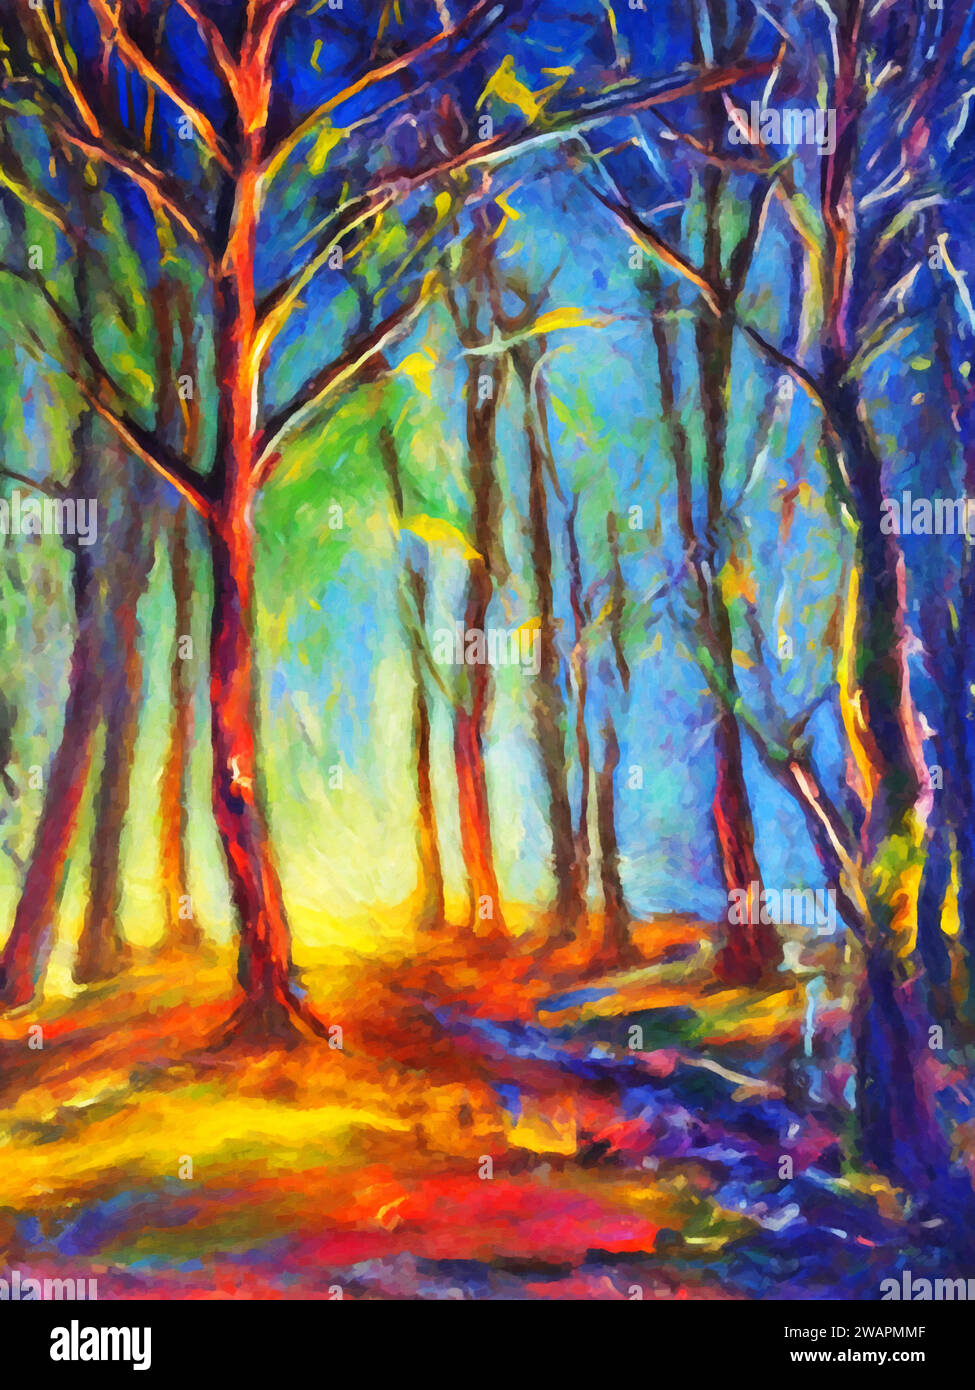 Light and Shadows (Forest Scene)' - Un dipinto che cattura l'interazione di luci e ombre tra alberi e fogliame in una foresta. Illustrazione Vettoriale